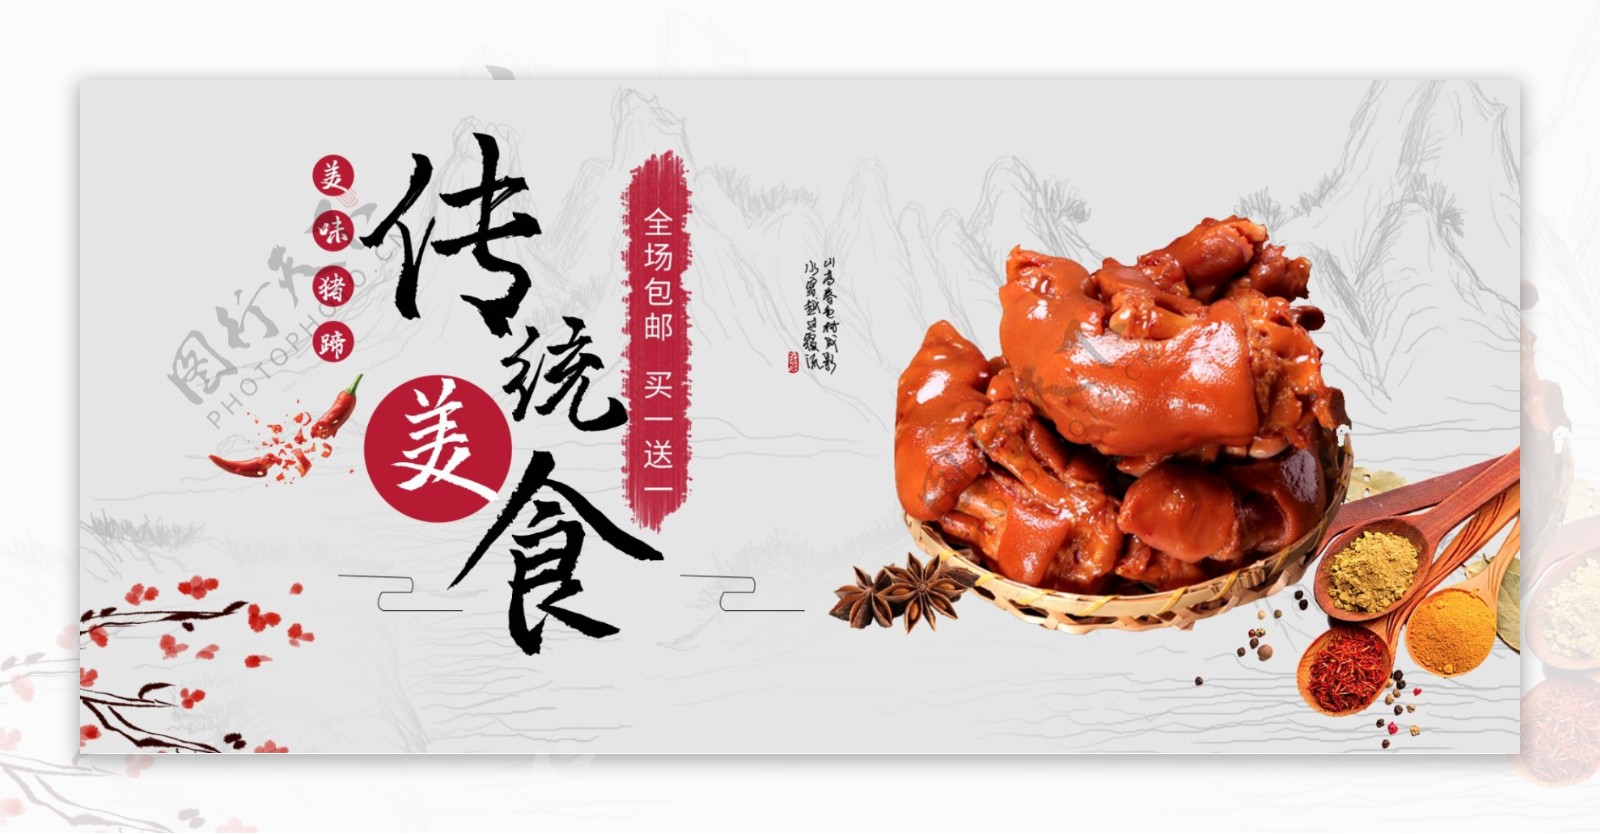 中国风传统美食猪蹄产品海报设计